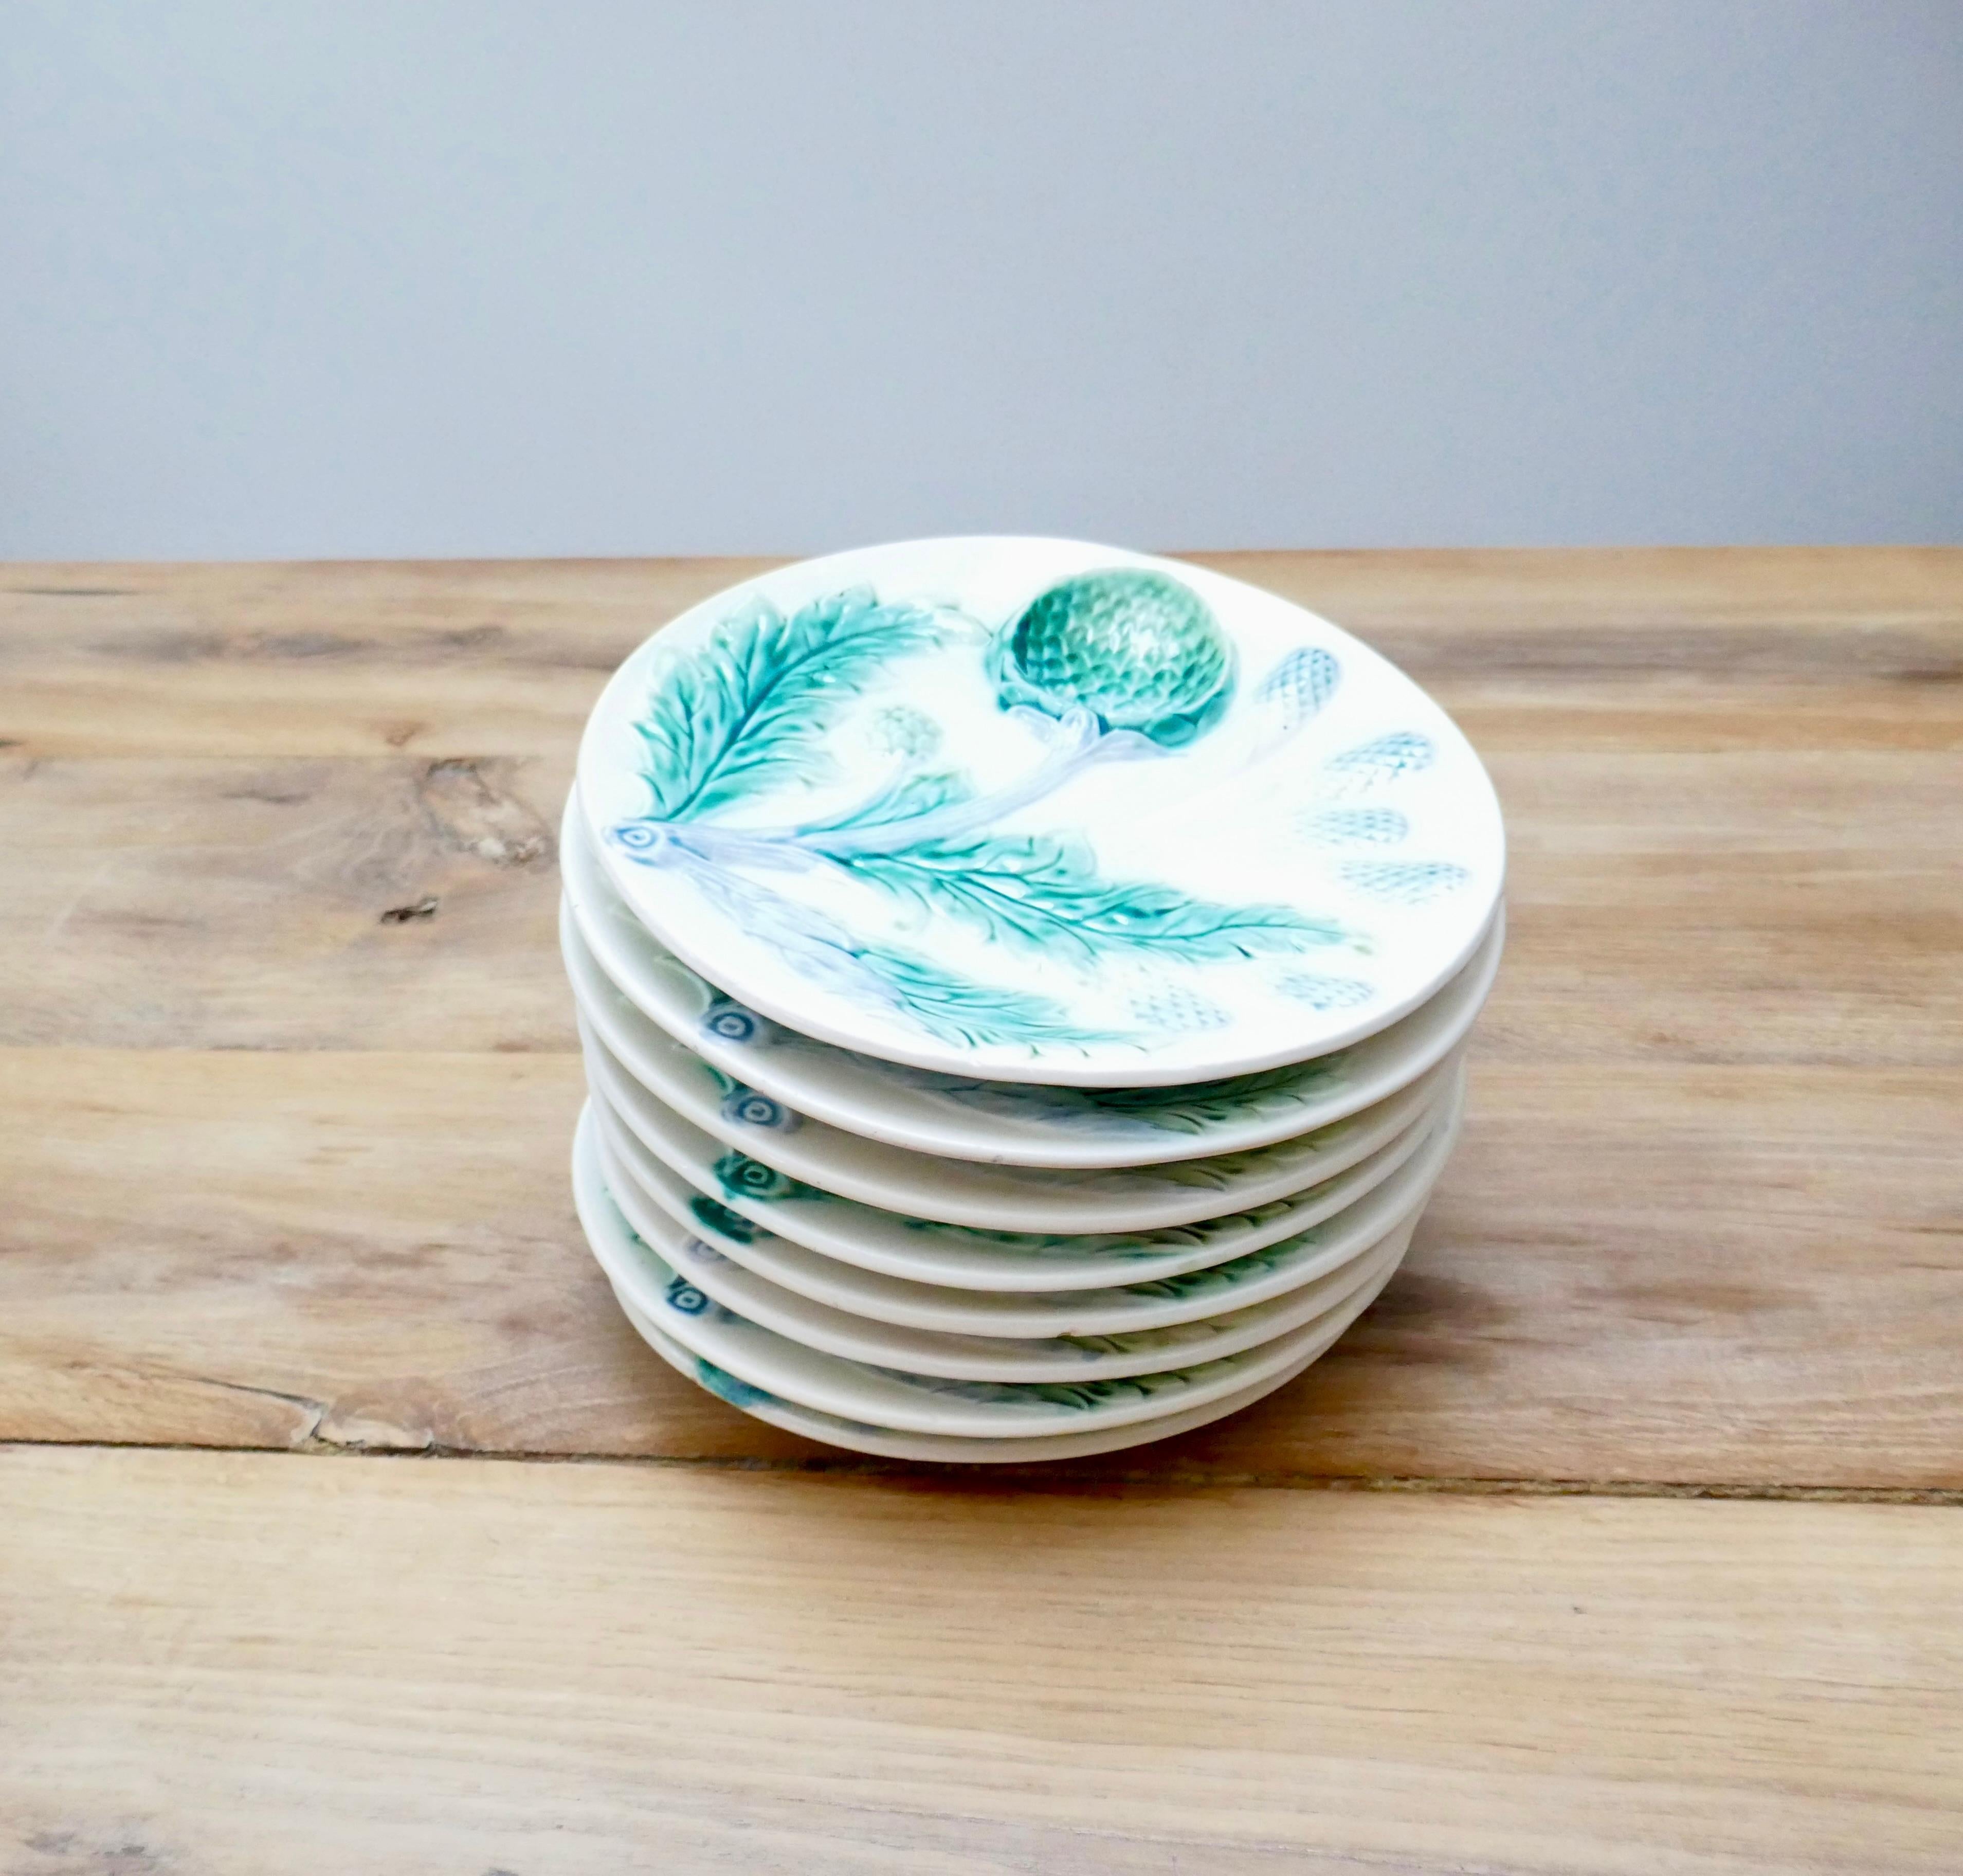 La majolique de Lunéville est connue pour ses couleurs vives, notamment le turquoise et le vert. La poterie a produit une variété étonnante d'assiettes, de plats et de soupières à asperges et à artichauts dans de multiples motifs. On connaît